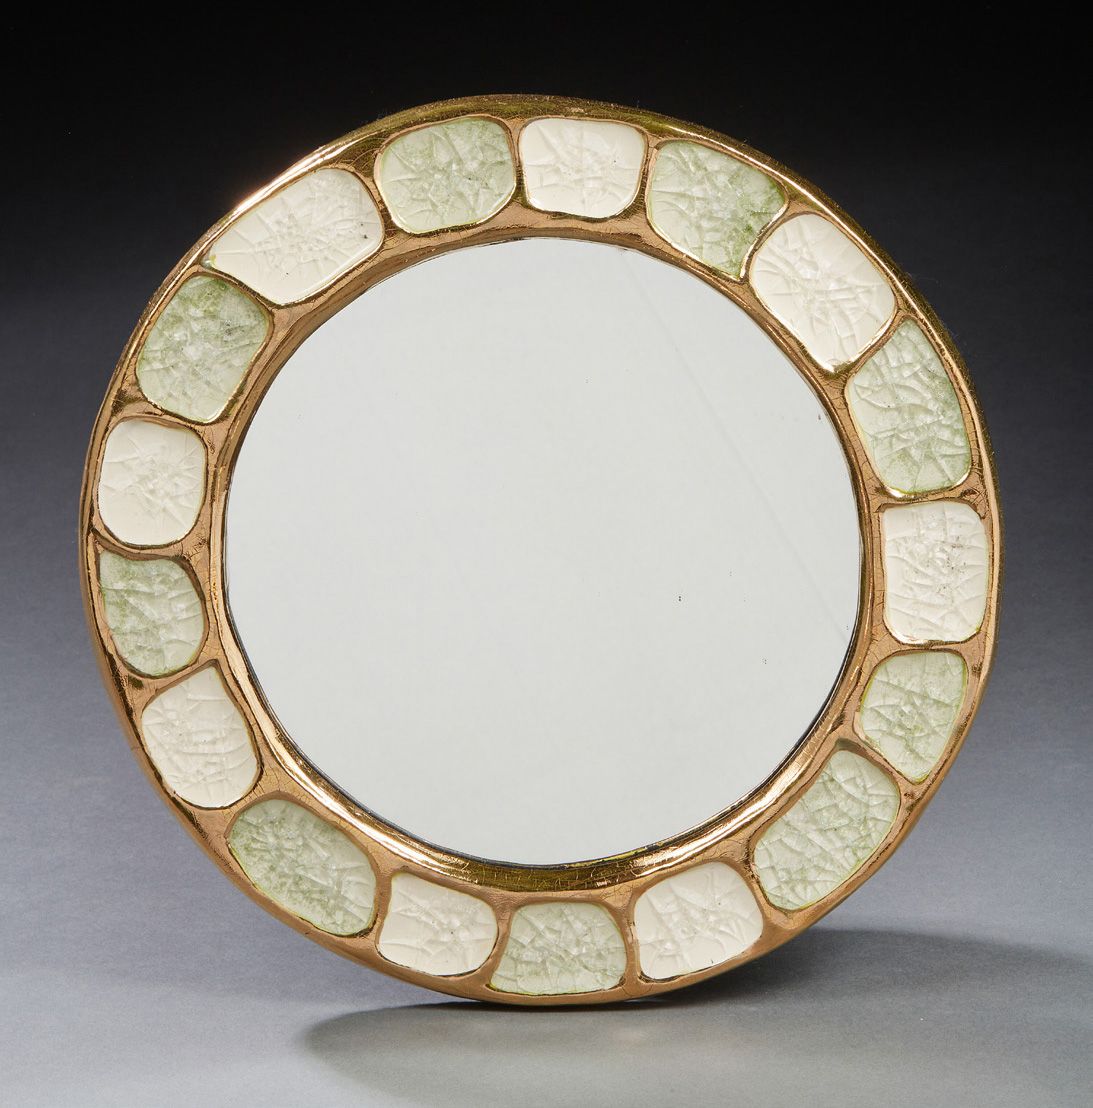 MITHÉ ESPELT (1923-2020) Specchio in cristallo ceramico
Diametro: 30 cm